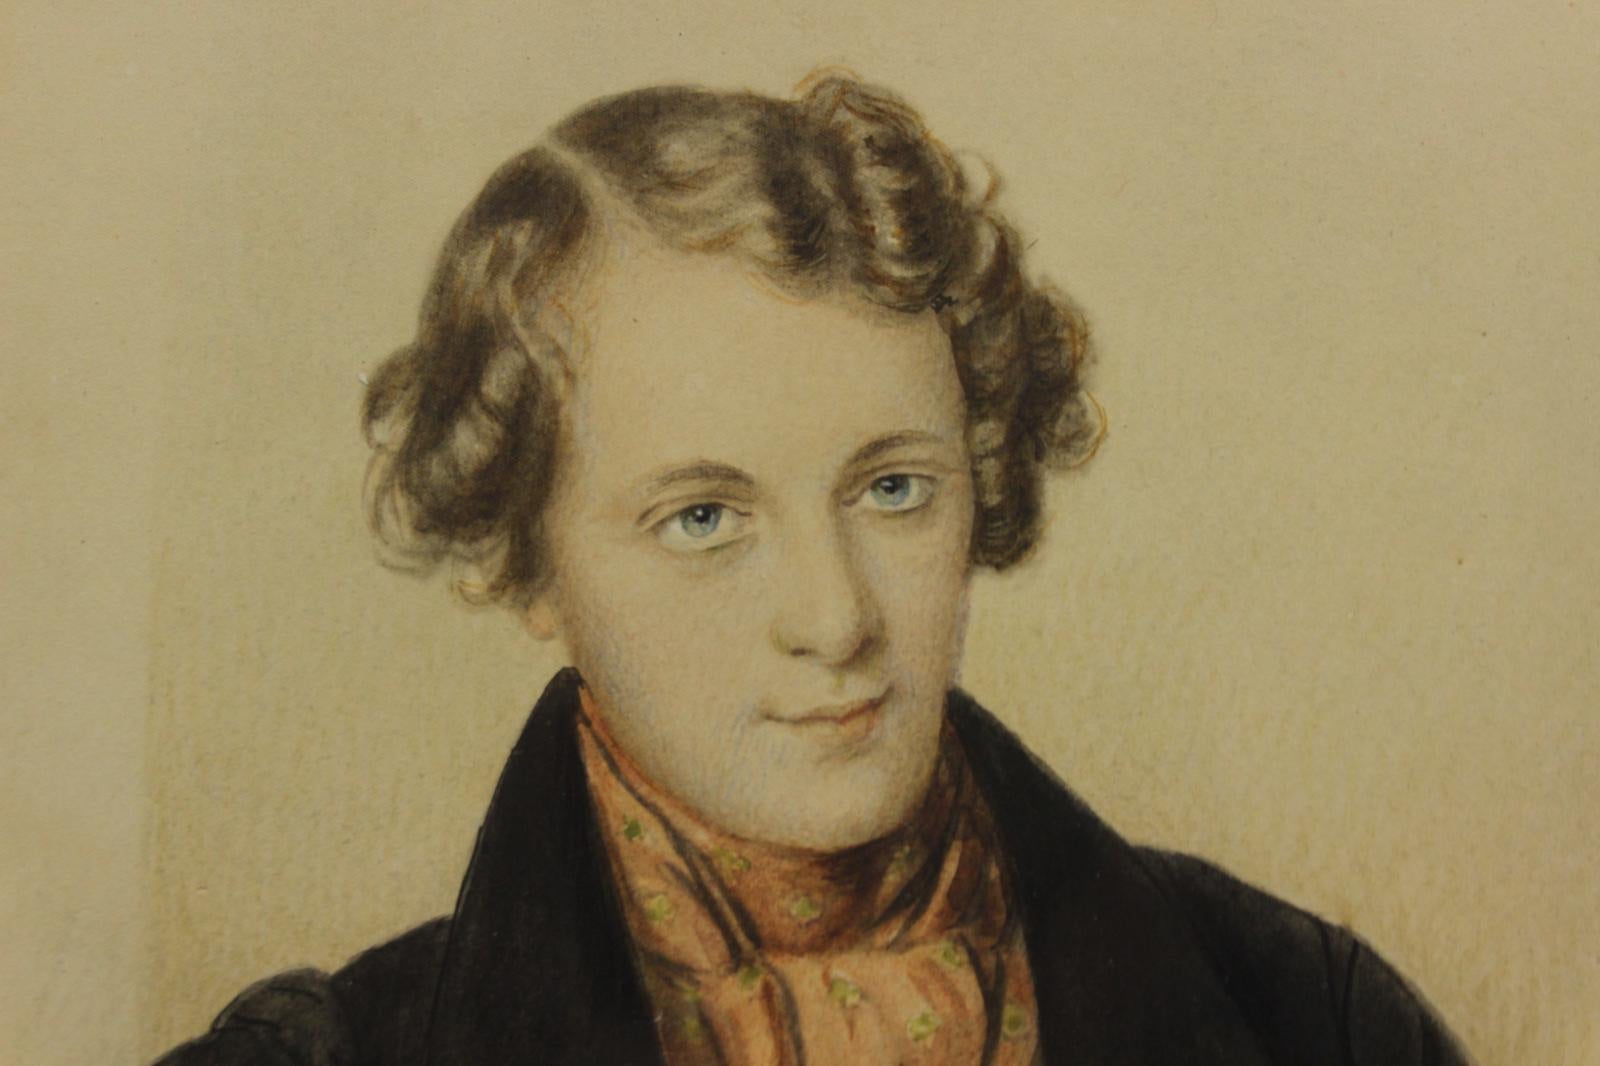 Elegante aquarelle délicate du 19e siècle représentant un jeune homme très élégant

Art Sz : 8 3/8 